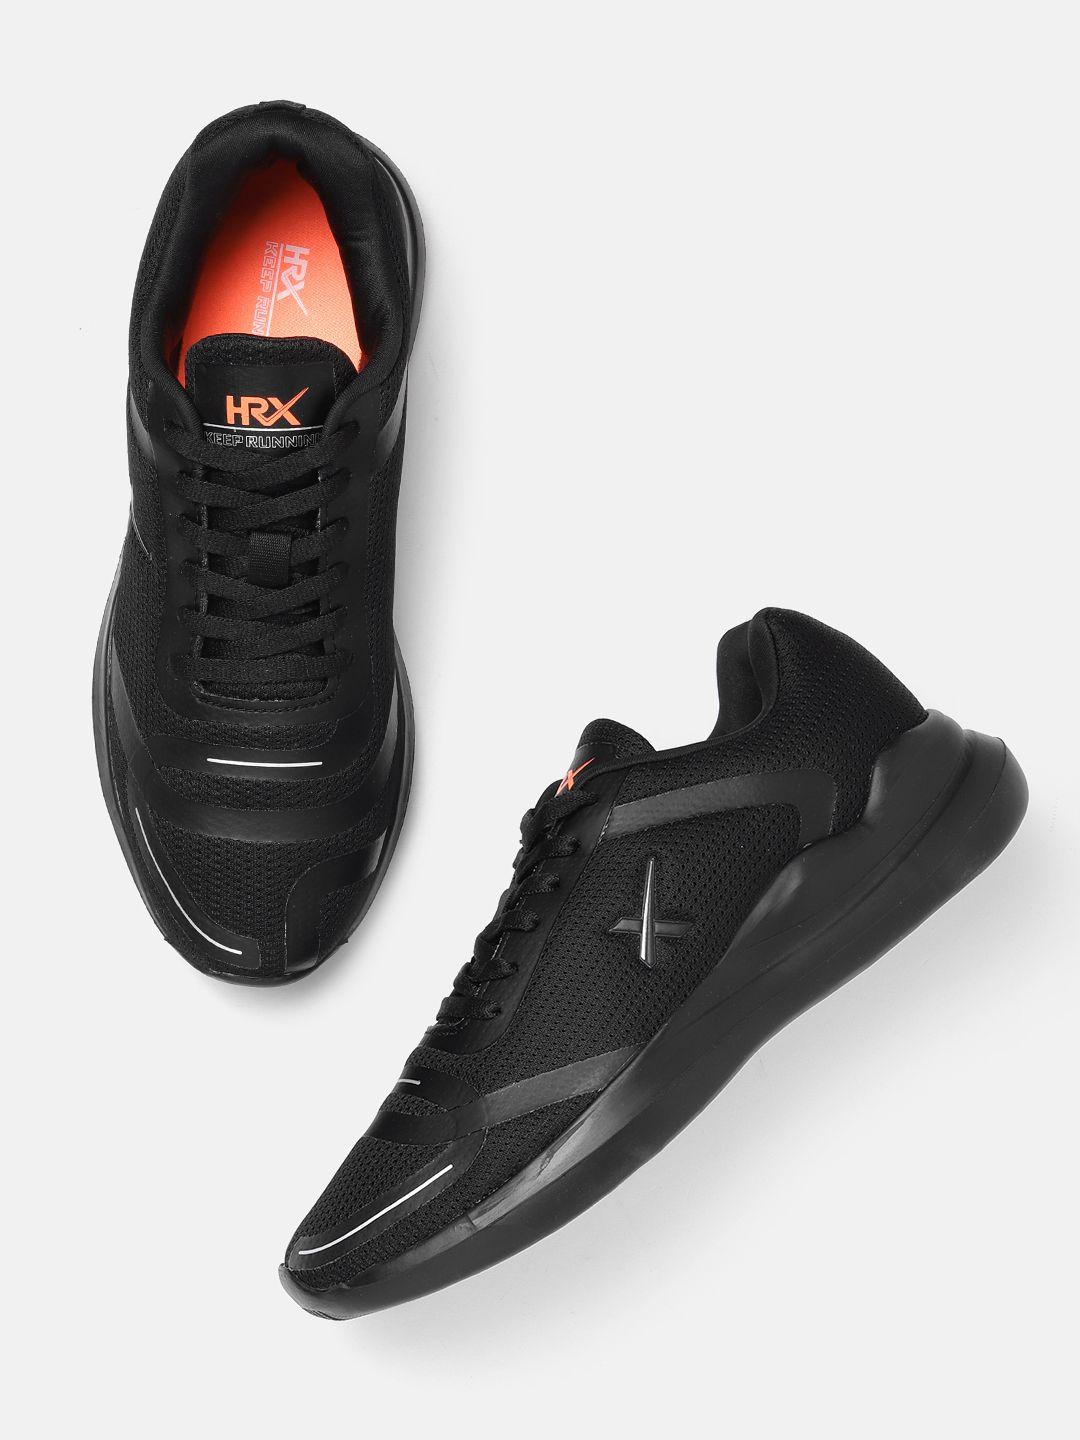 hrx by hrithik roshan men woven design running shoes